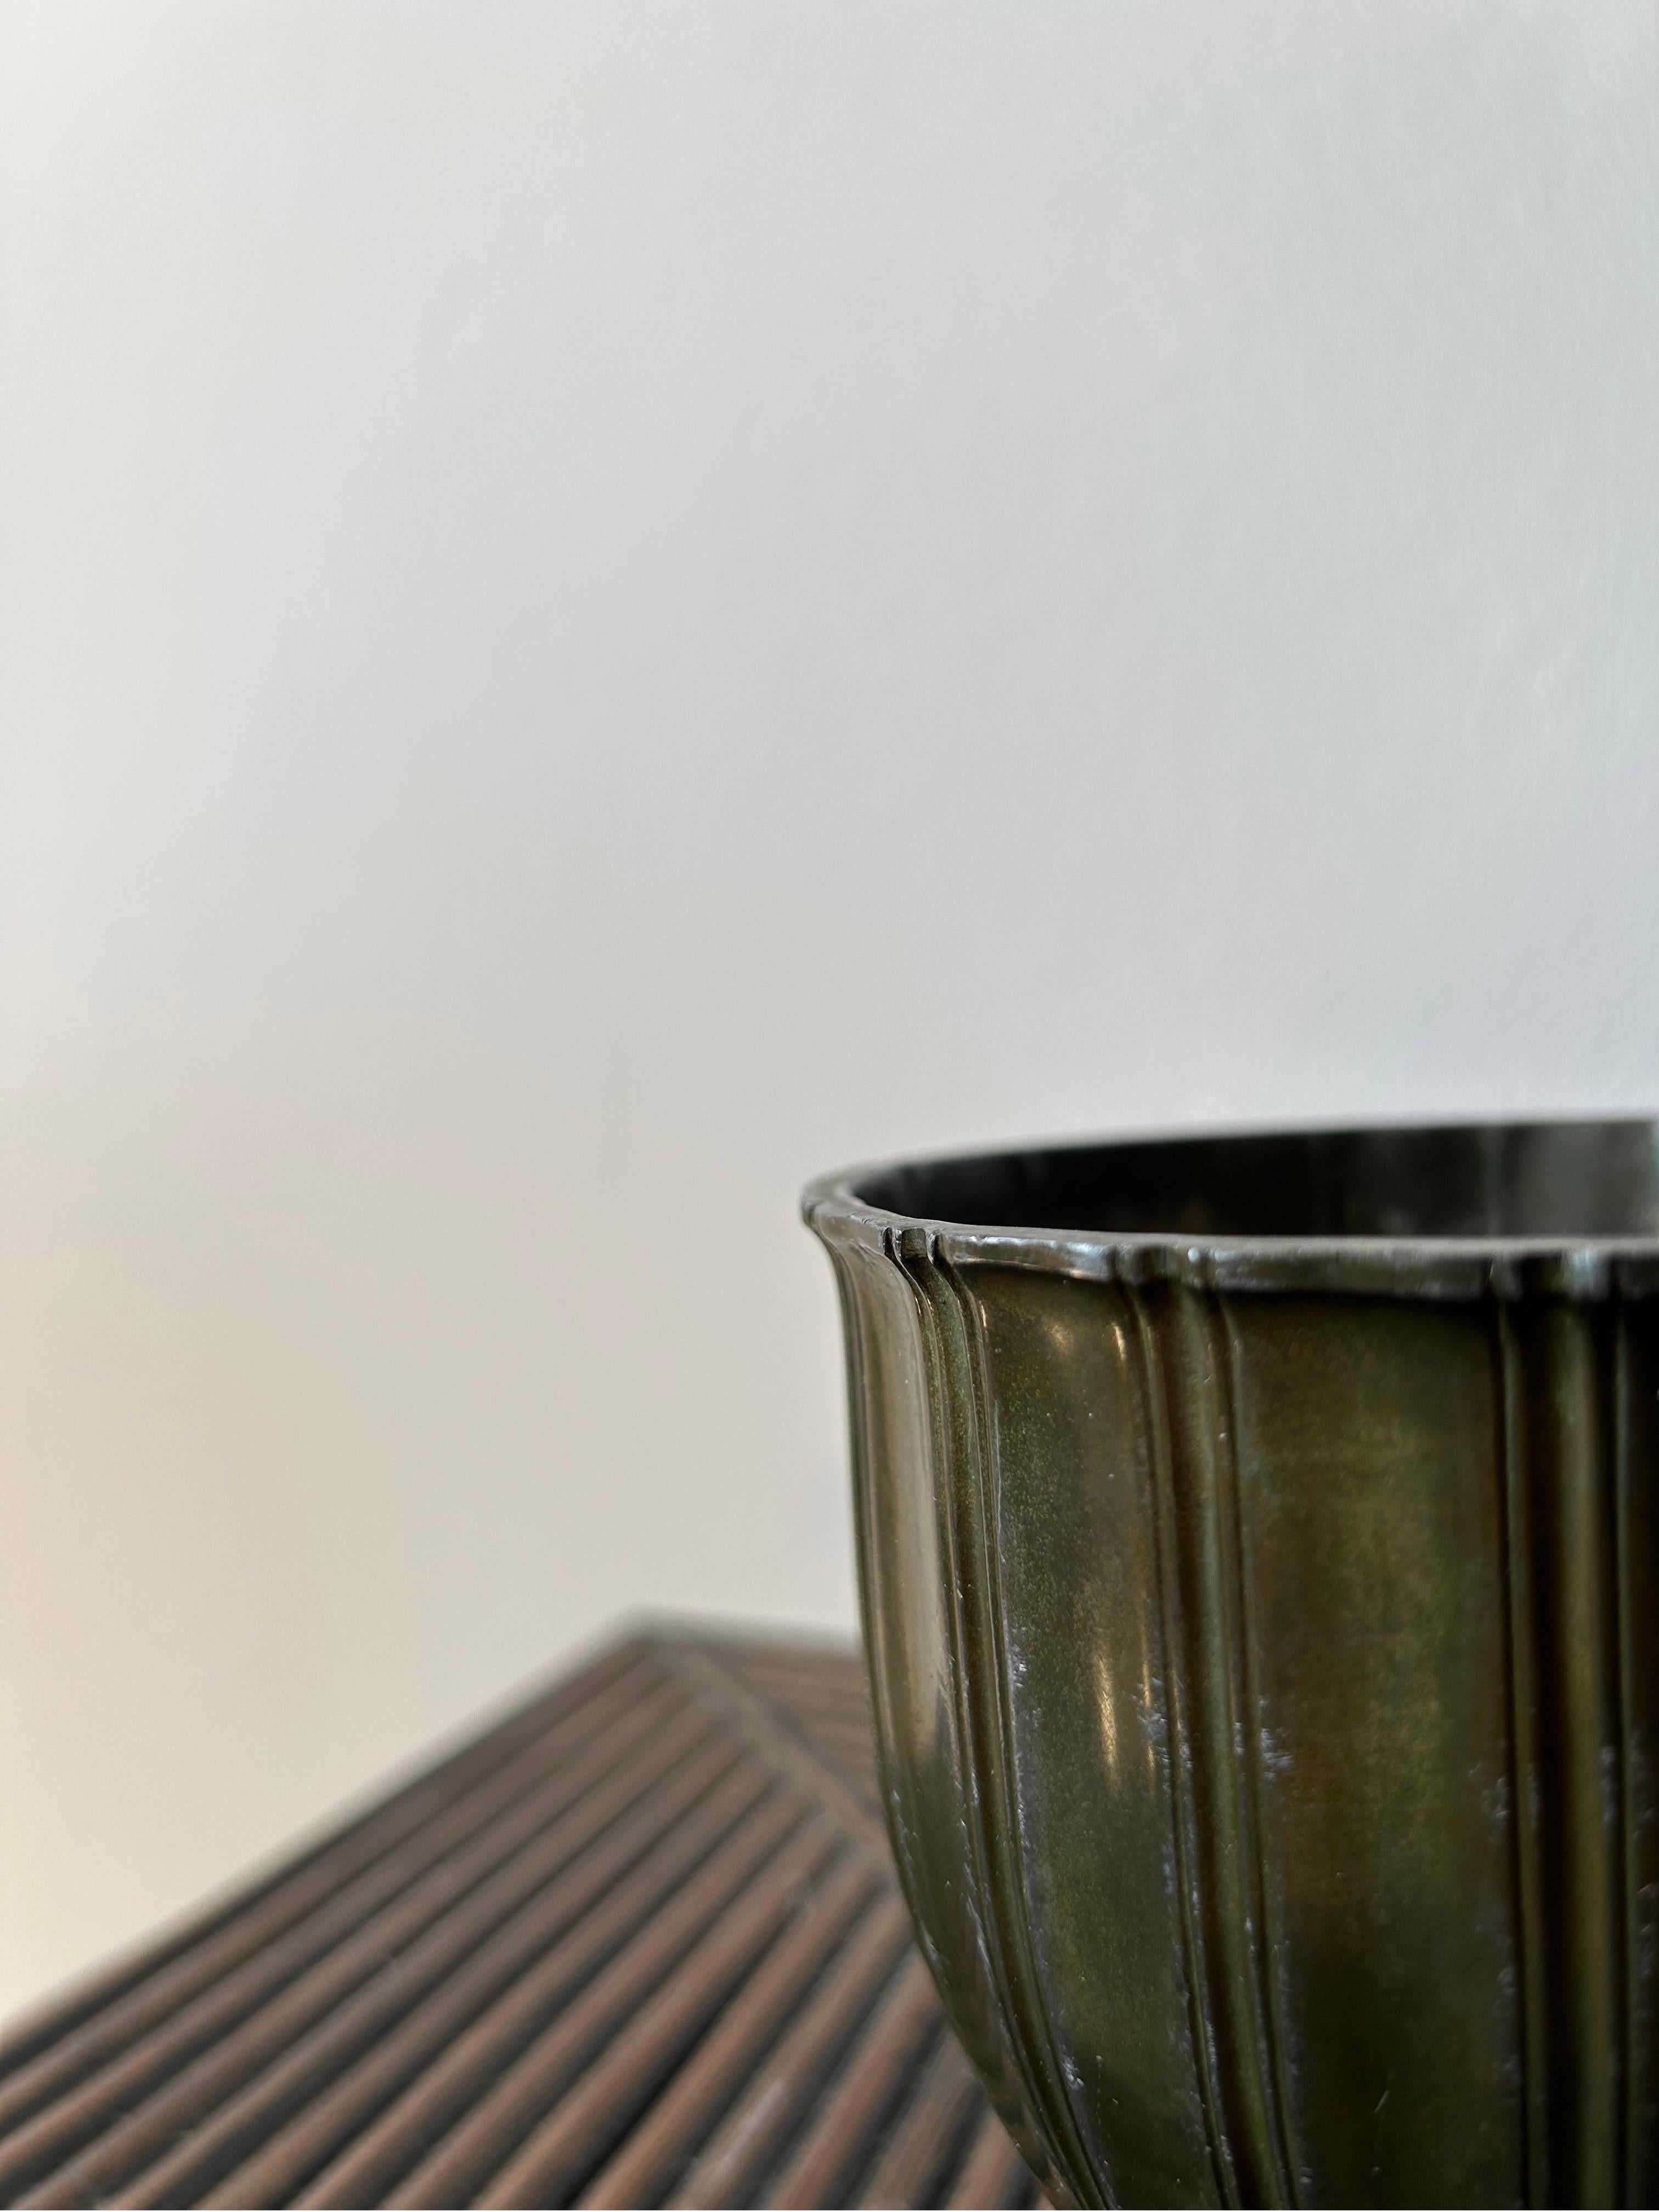 Vase Andersen disko en métal modèle 2361 avec une belle patine d'aspect bronze.

Le vase est en bon état avec une belle patine d'origine qui est très similaire à la patine du bronze qui se forme avec le temps.

Ce vase est une pièce parfaite pour